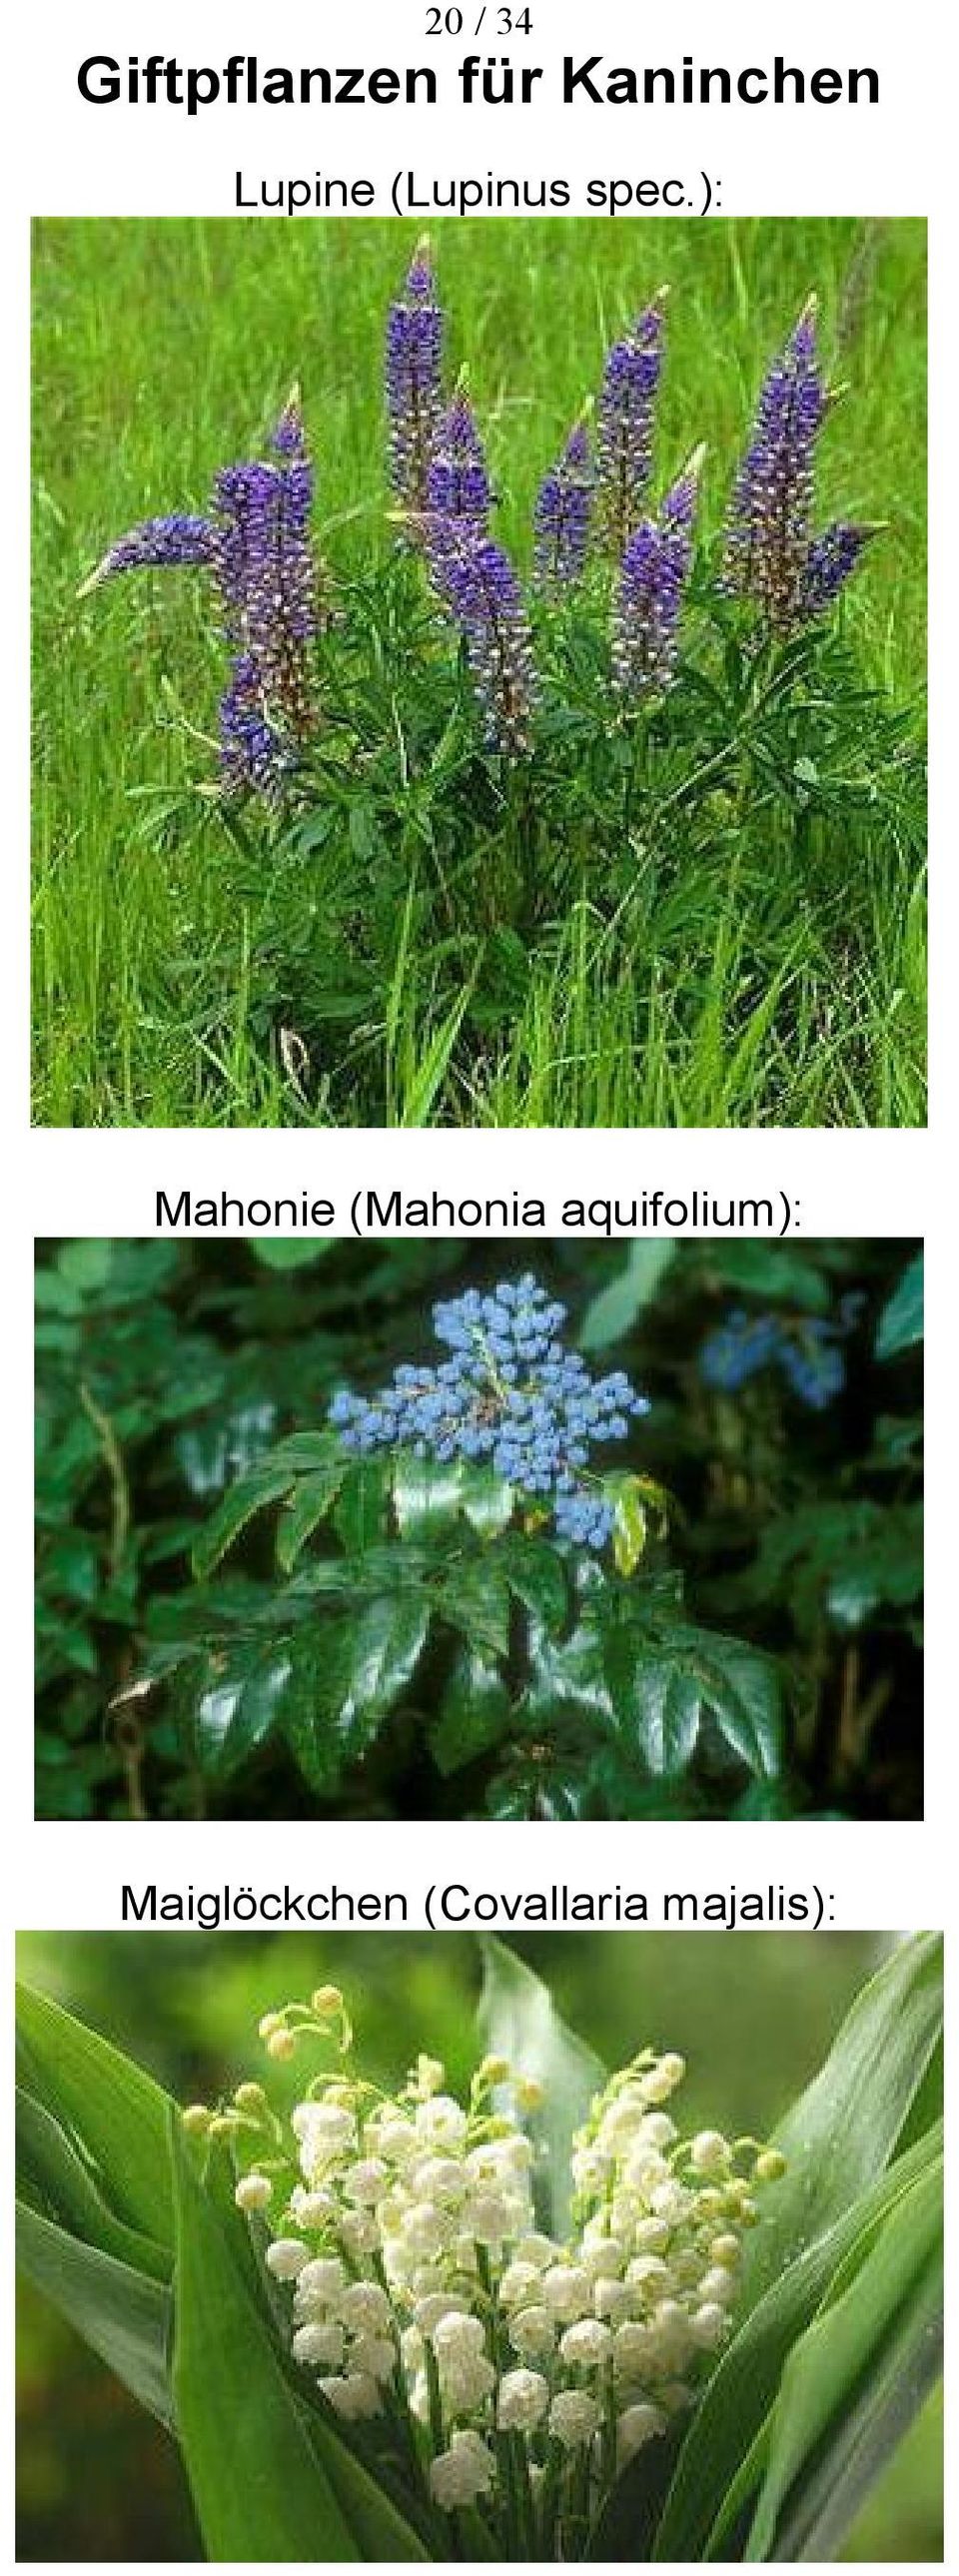 (Mahonia aquifolium):